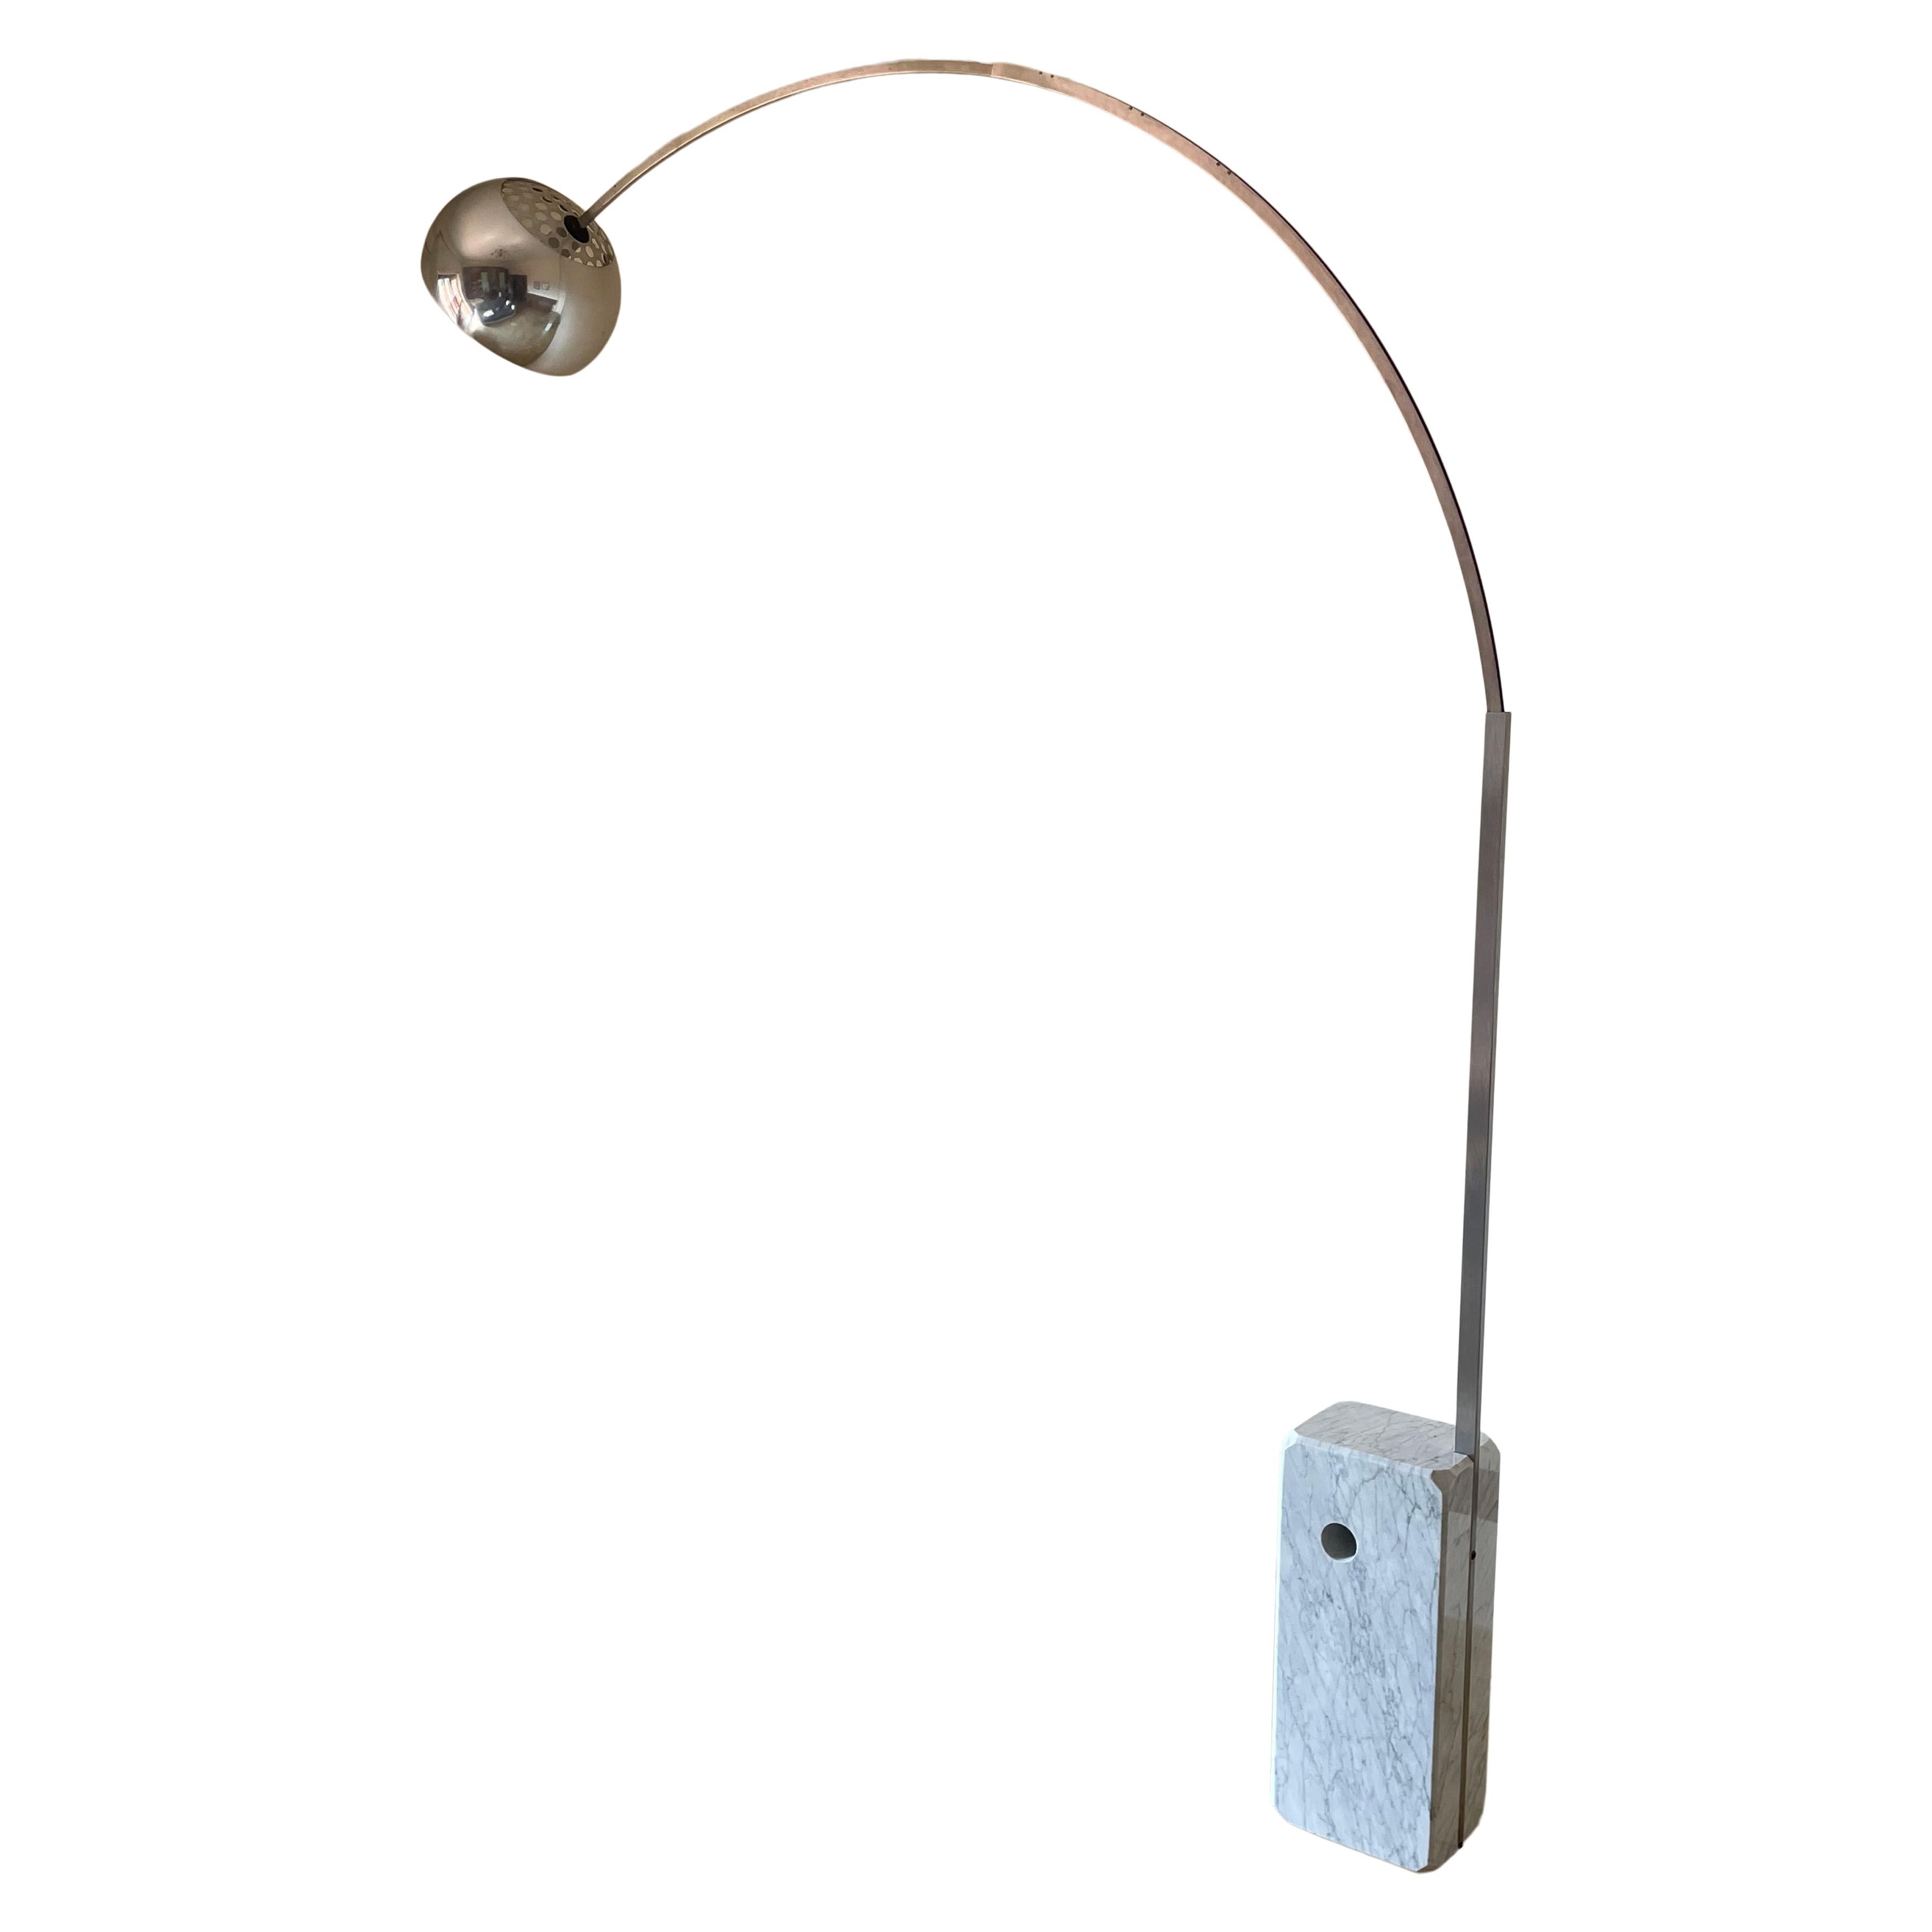 Lampe Arco conçue par Achille et Pier Giacomo Castiglioni en 1962 et fabriquée par la marque italienne Flos en 1967.

Excellent état vintage.

De l'extérieur, il ressemble à un simple lampadaire. Une structure, une ampoule et une base. Mais il y a